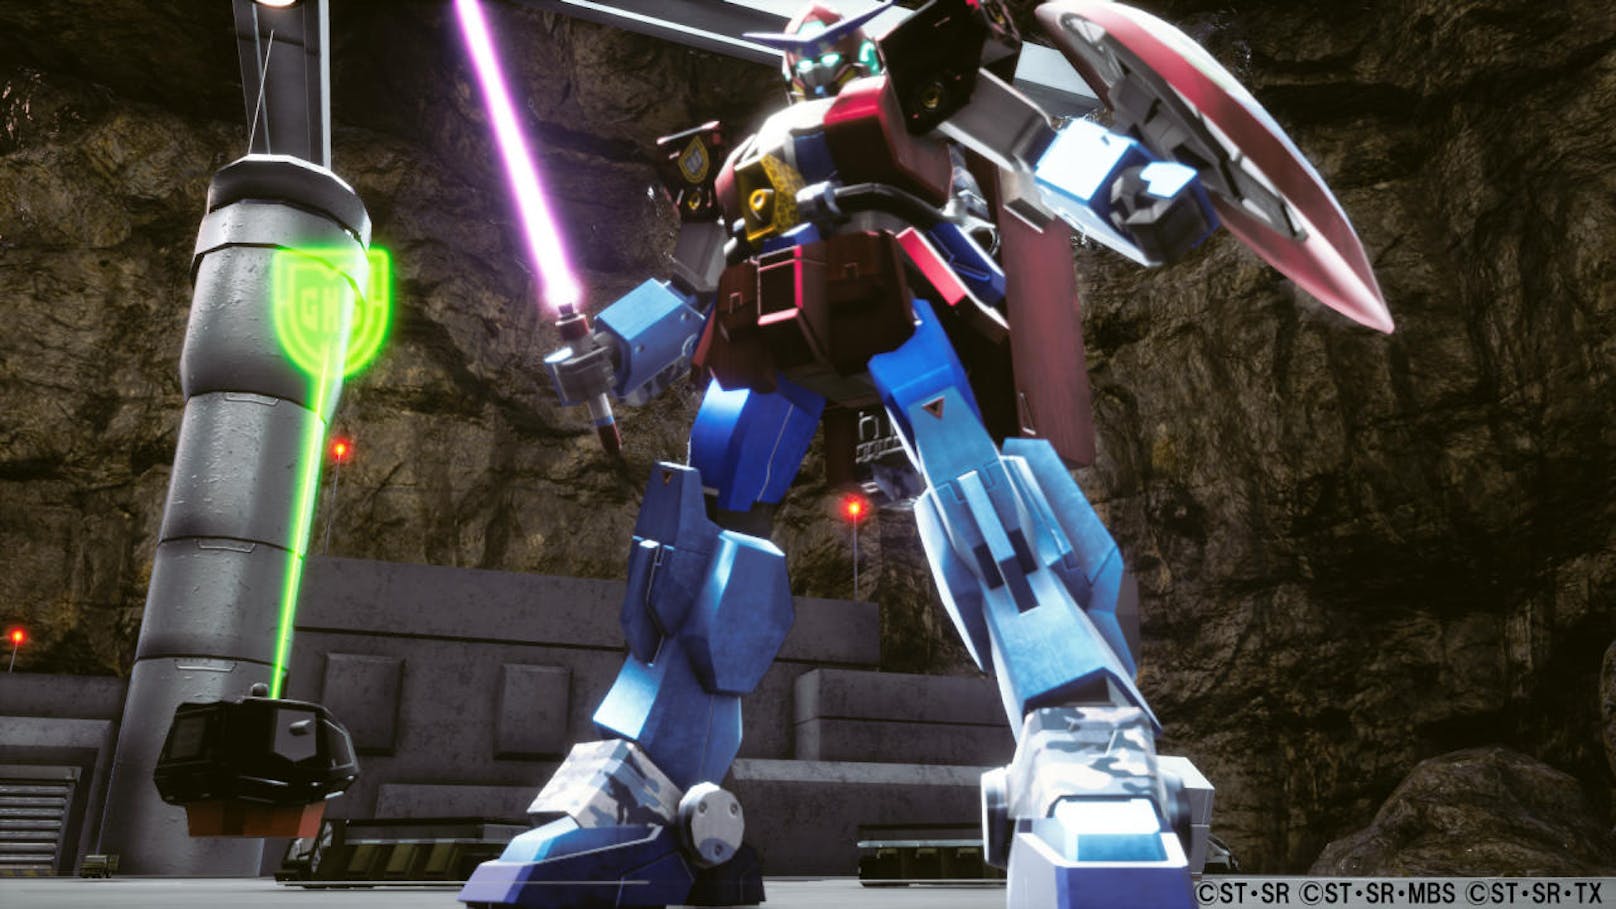 Das neueste Spiel des bekannten Mecha-Franchise New Gundam Breaker ist im PlayStation Network für PlayStation 4 erschienen. Jeder, der New Gundam Breaker spielt, bekommt mit dem Day-One-Patch eine bestimmte Menge an In-Game-Währung geschenkt. Spieler können ihre 100.000 GP nach Herzenslust ausgeben und neue Teile für ihre Gunpla erwerben. Außerdem stabilisiert der Day-One-Patch den Online-Modus.